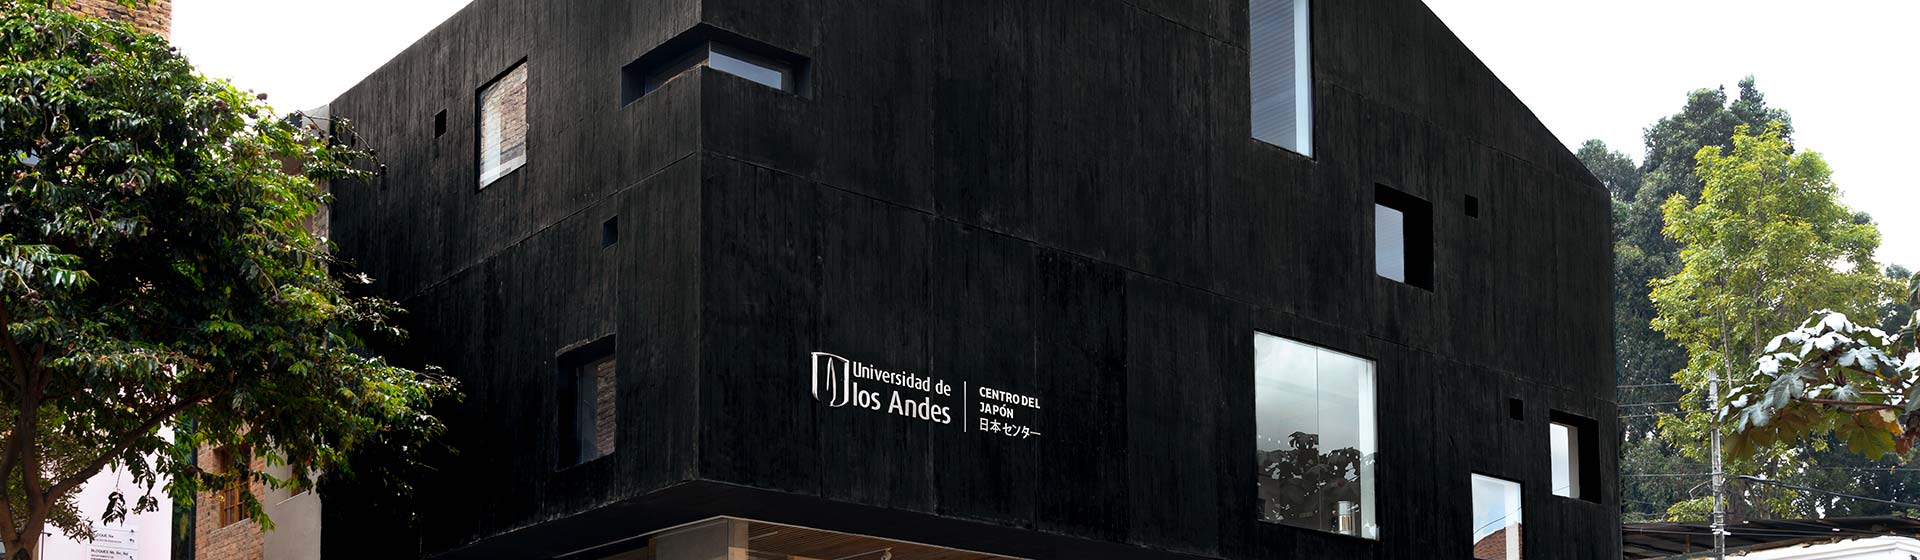 Edificio Centro del Japón, Bogotá - Colombia